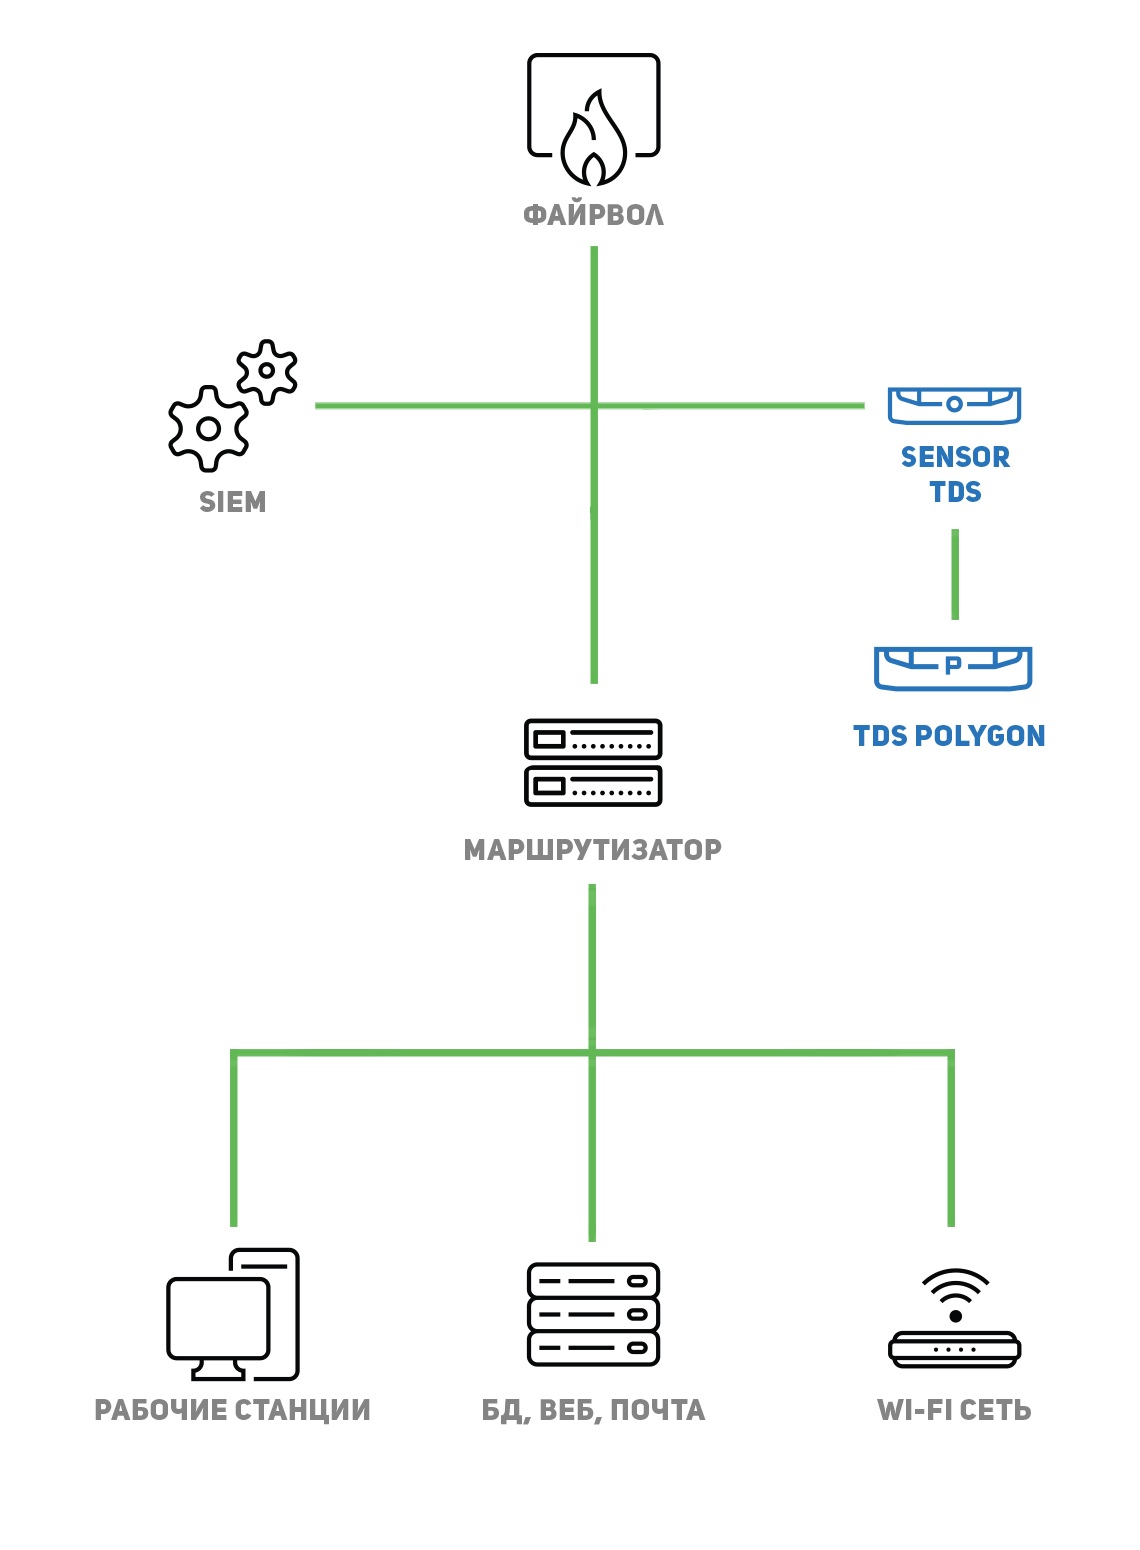 Архитектура системы TDSс самостоятельной обработкой данных